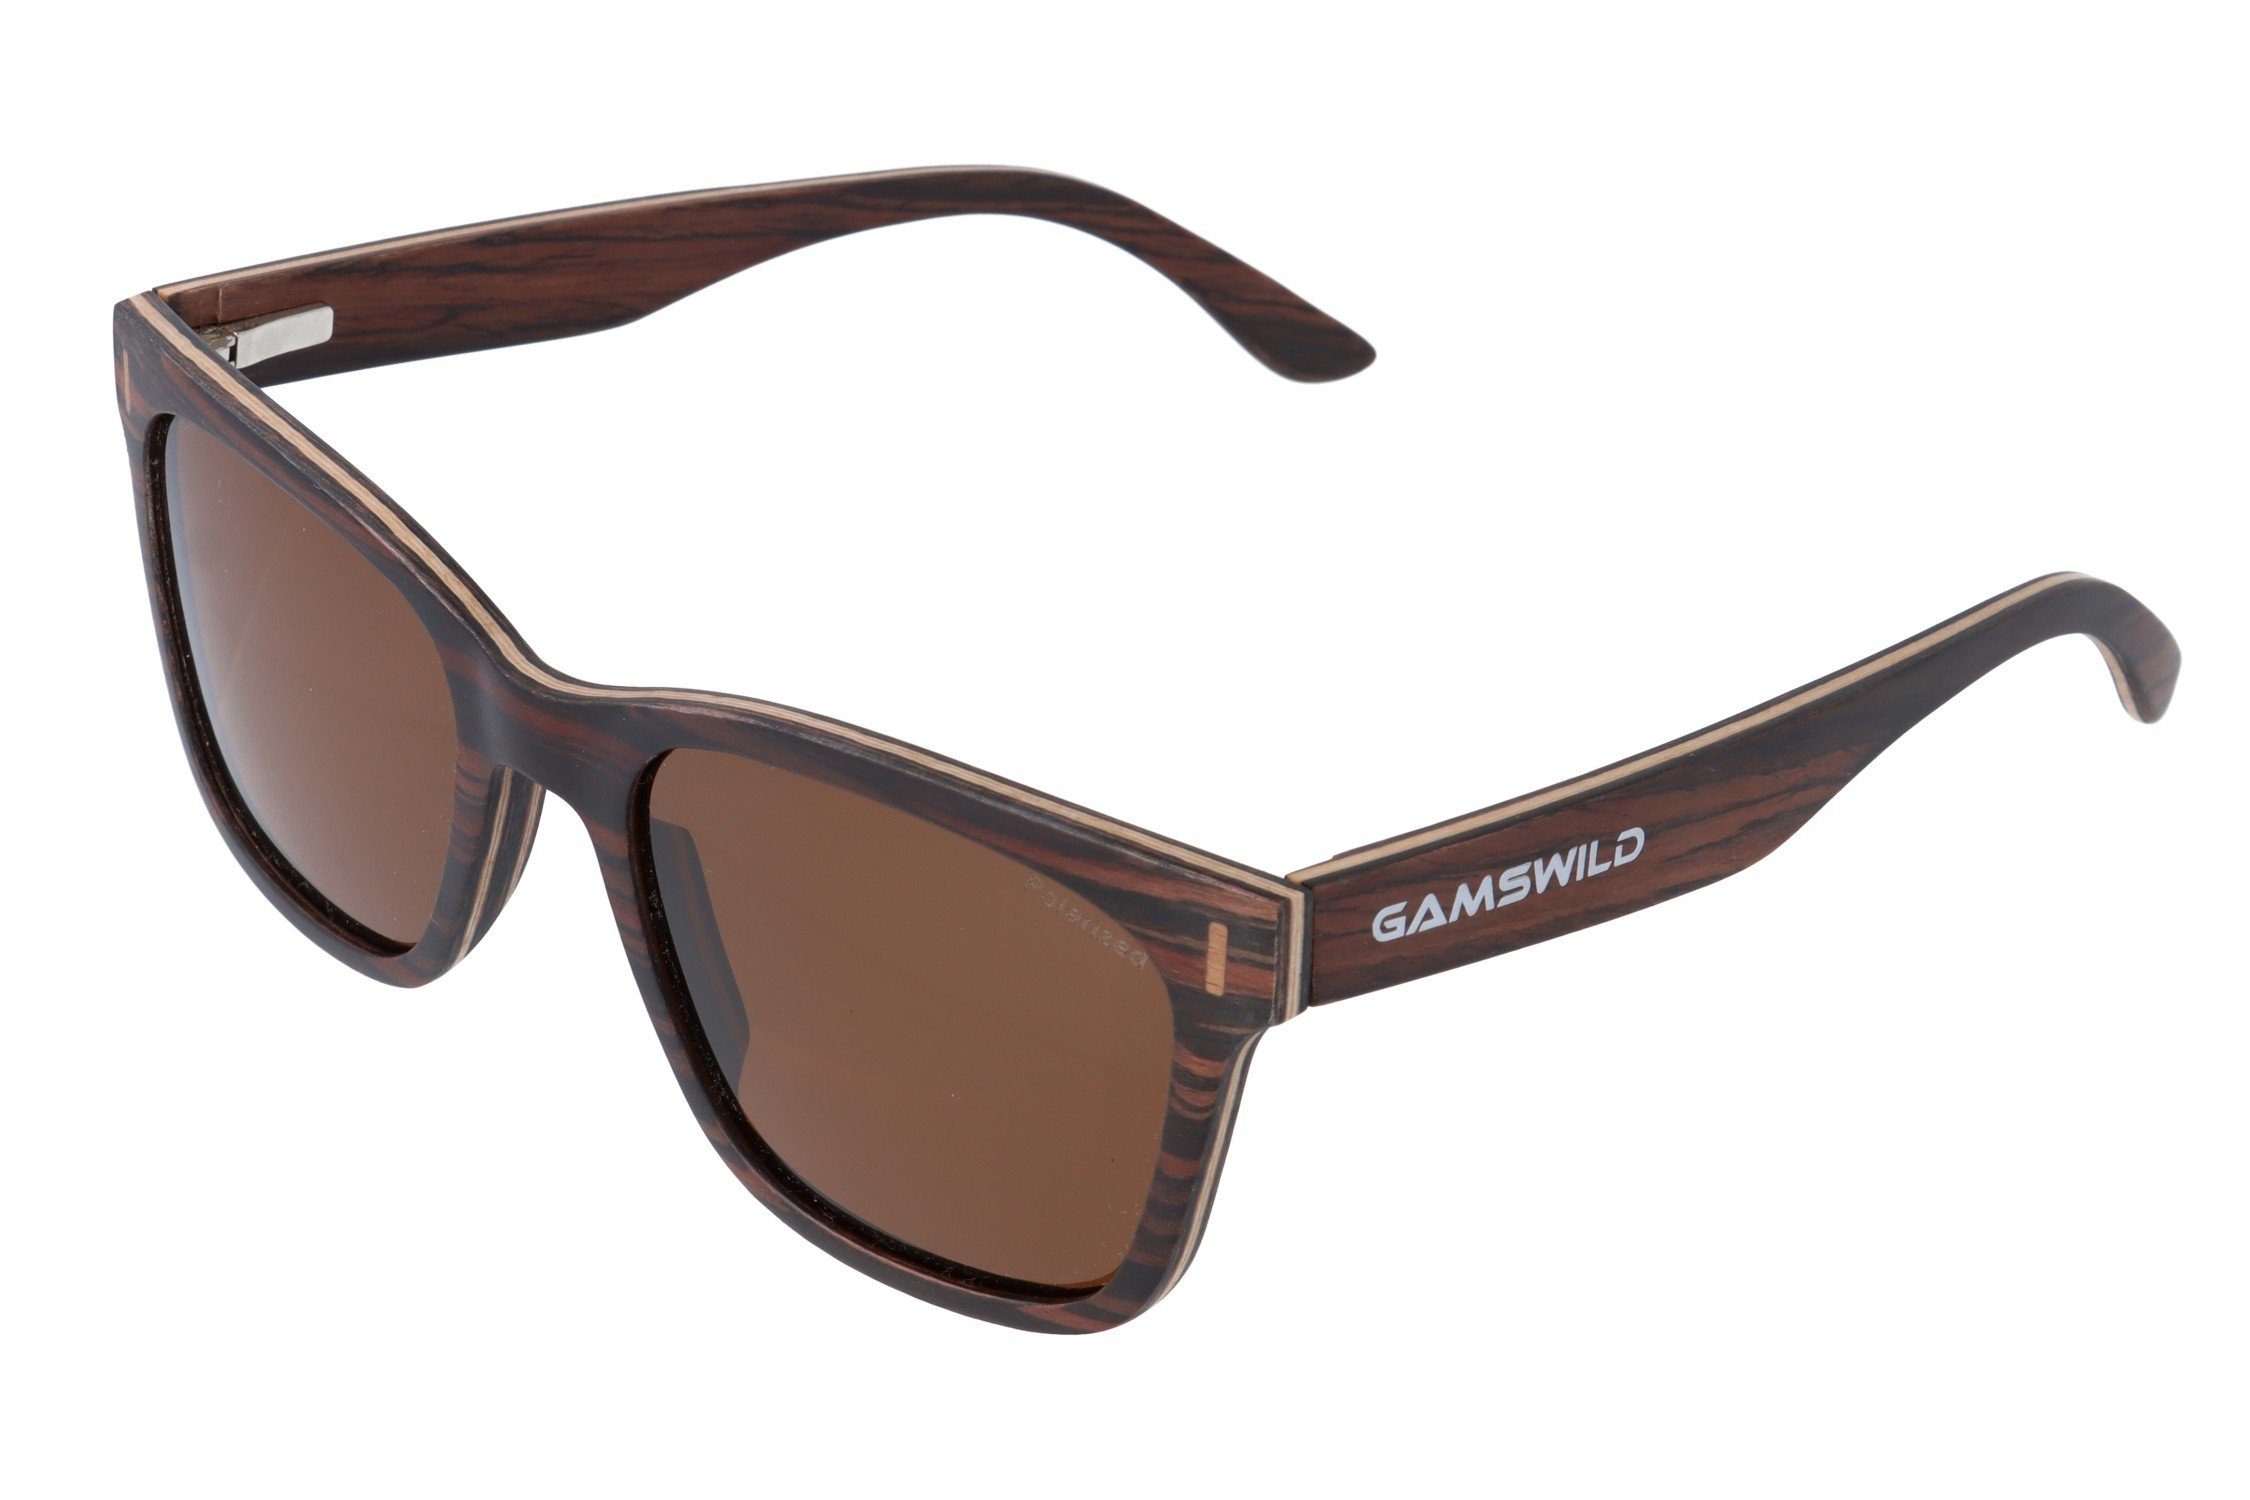 Damen Holzbrille Gamswild G15 braun, blau braun grau, & Herren Glas in GAMSSTYLE Unisex, WM0011 polarisierte Sonnenbrille Gläser